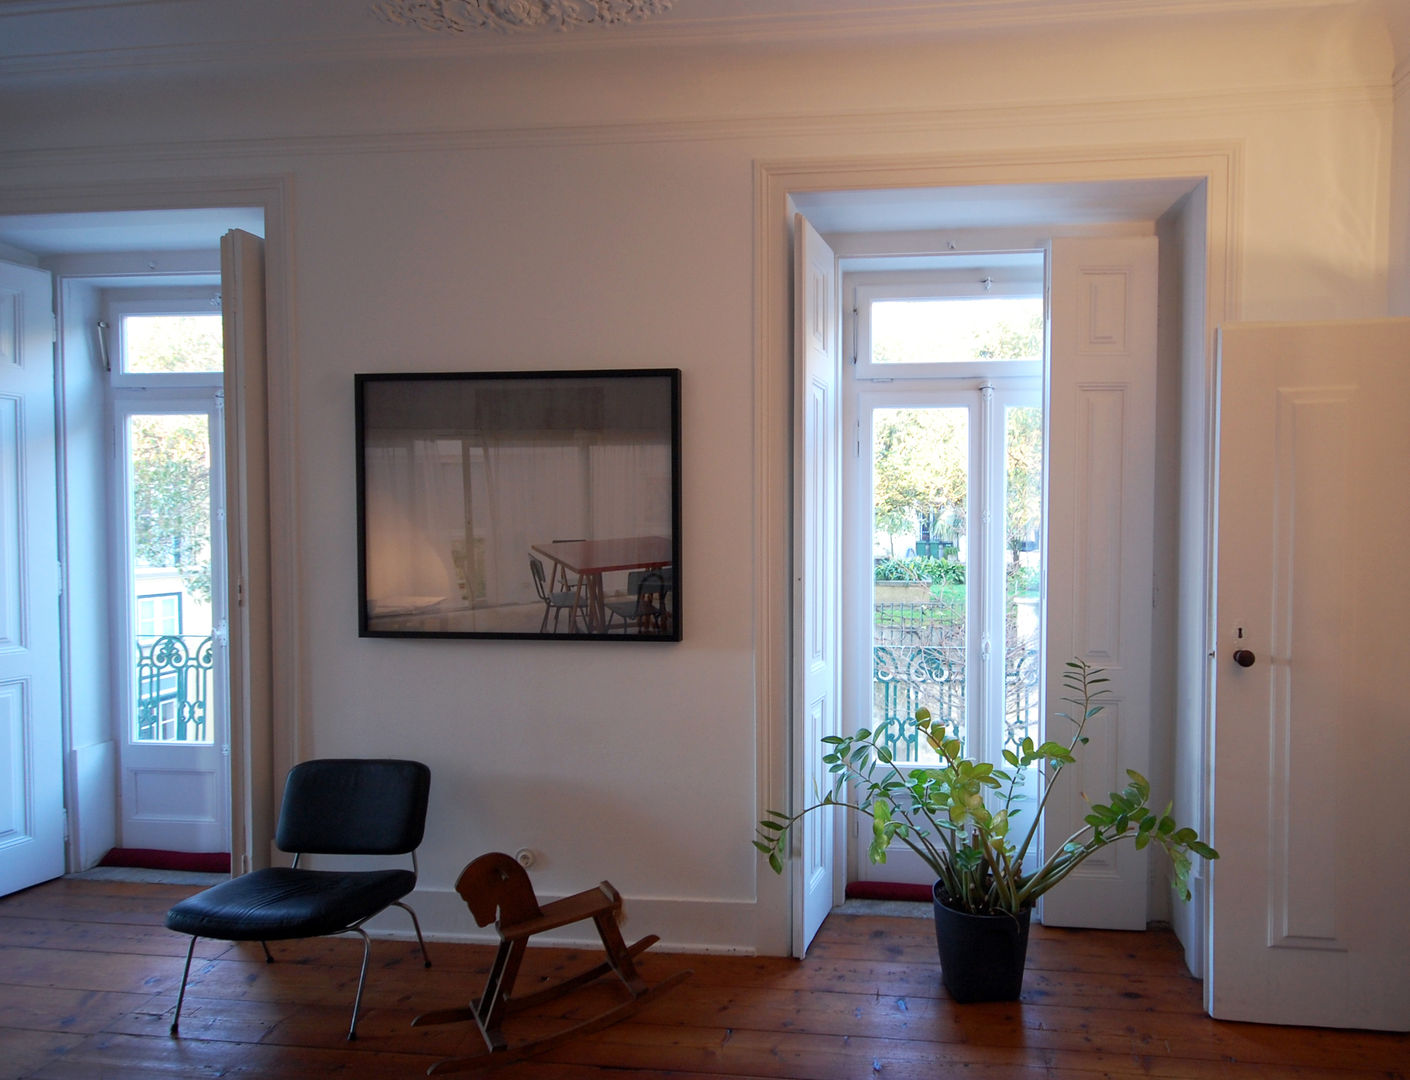 Apartamento Pedras Negras (2012), pedro pacheco arquitectos pedro pacheco arquitectos Minimalist living room